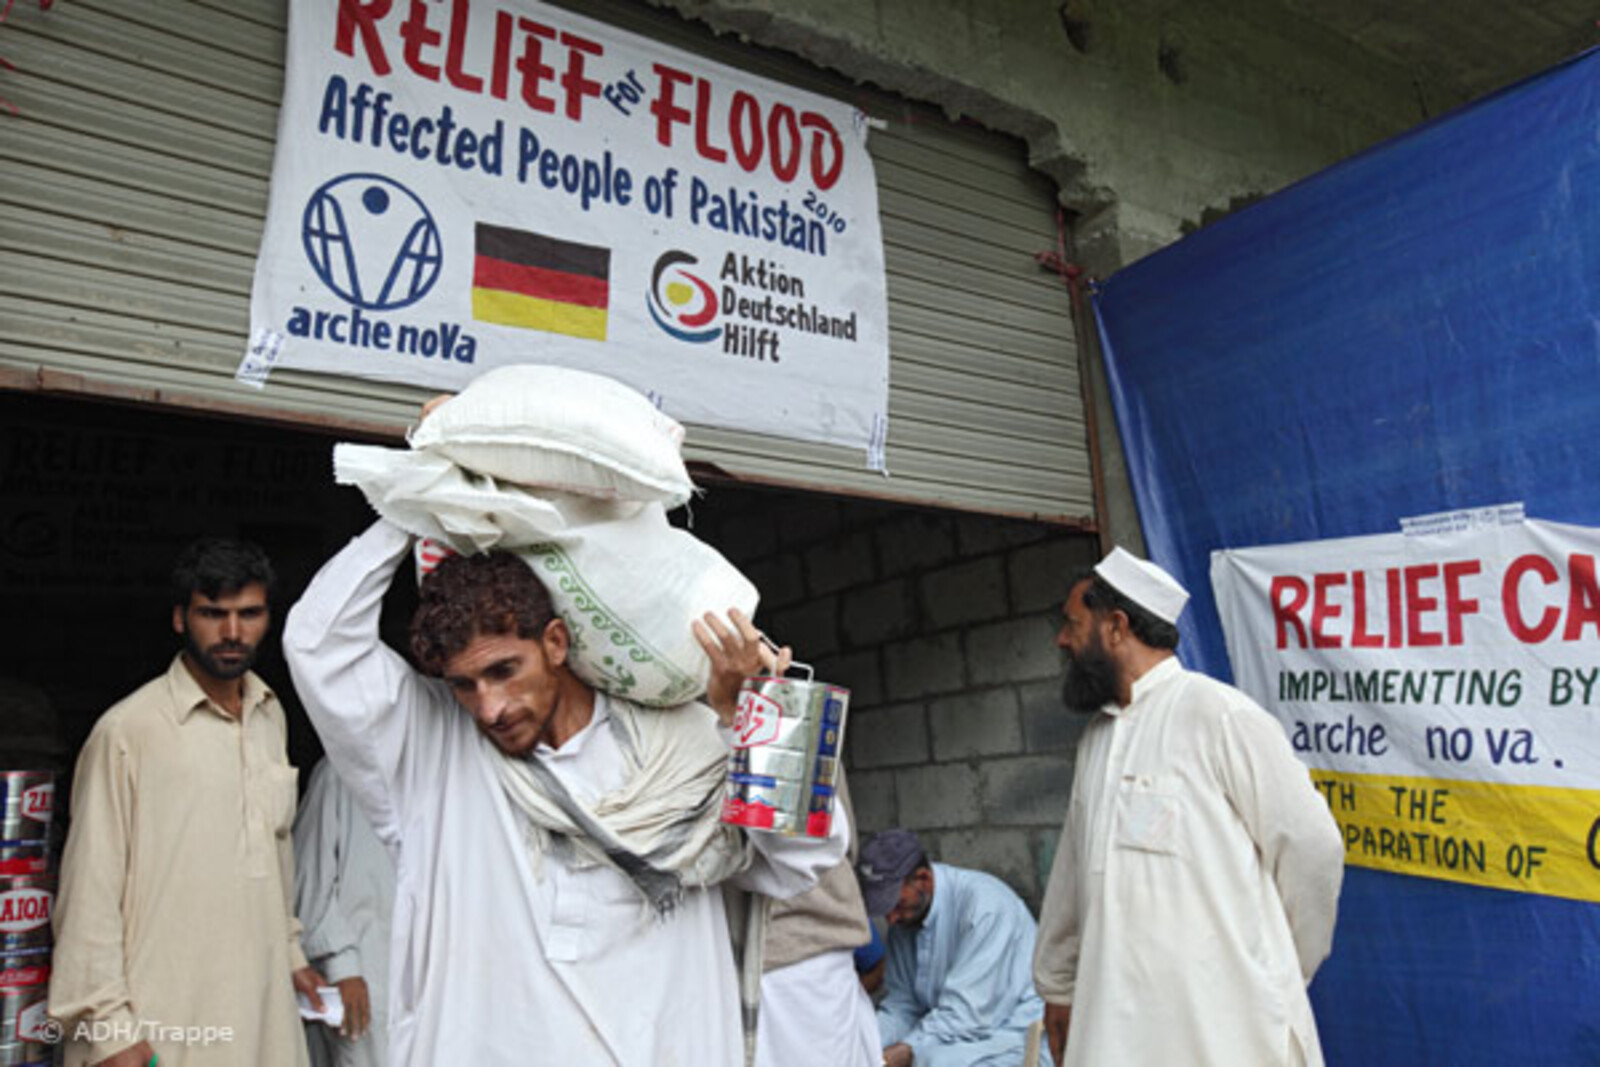 Flut Pakistan: Lebensmittelverteilung arche noVa